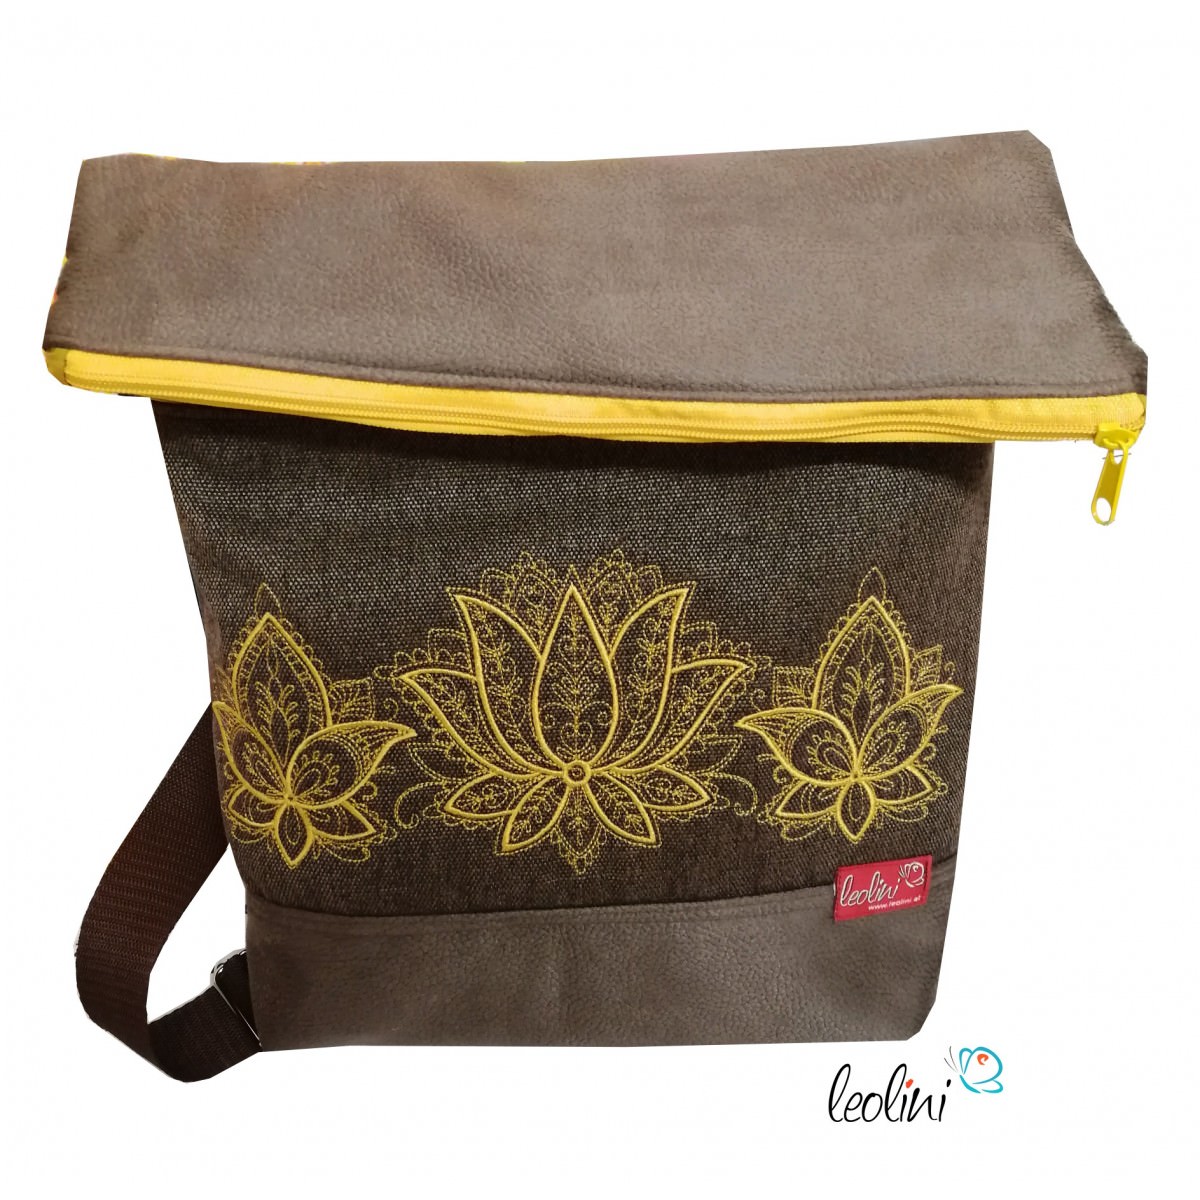 Foldover Tasche Lotusblumen Stickerei  - mit Außenfach